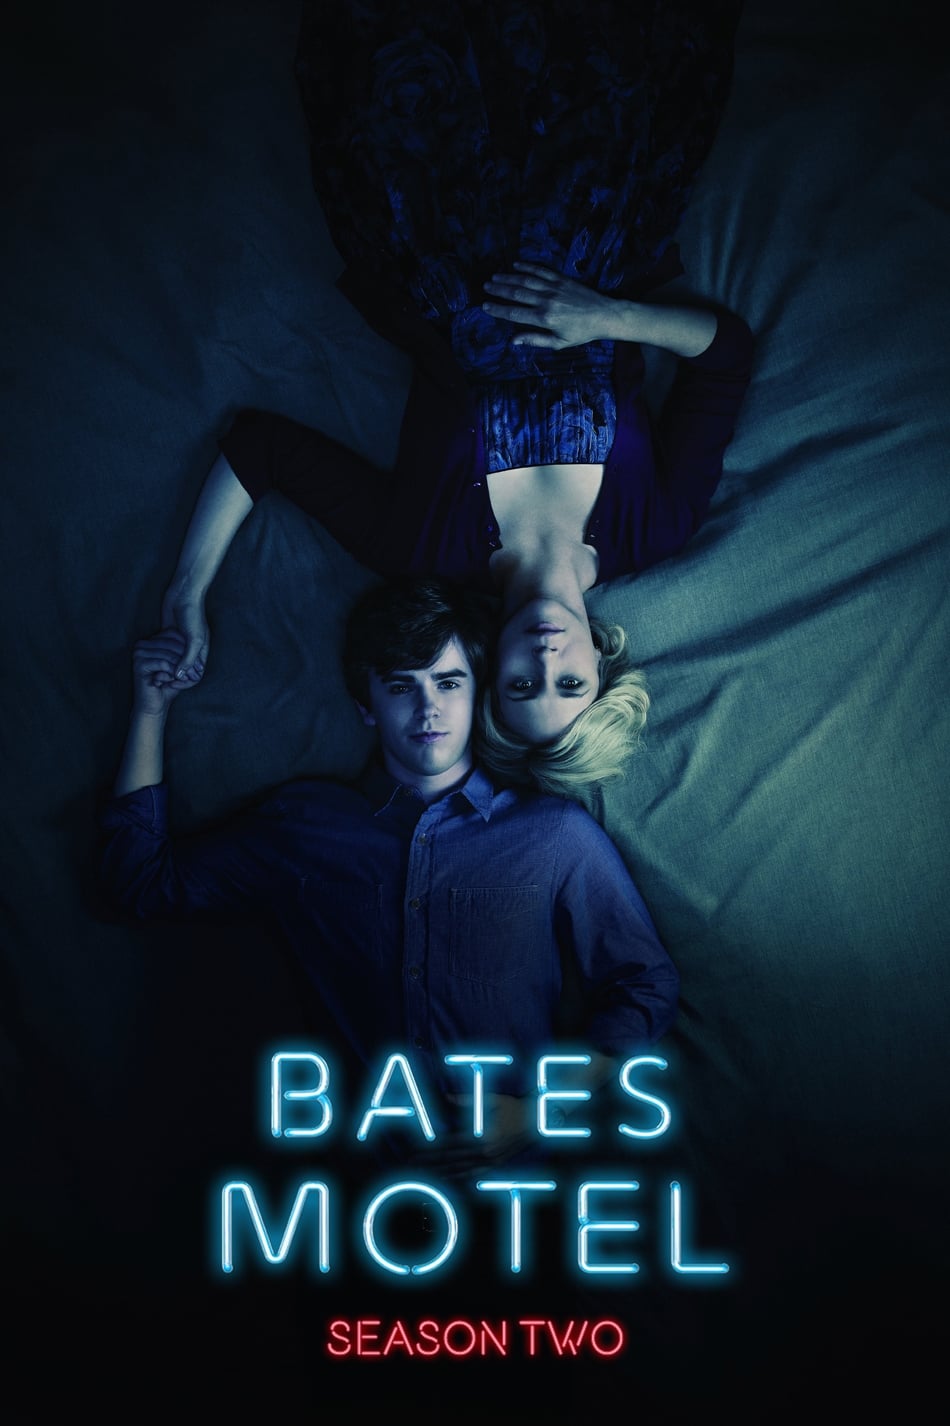 ดูหนังออนไลน์ Bates Motel (2014) Season 2 ซับไทย EP 2 เบส โมเทล ปี2 ตอนที่2 (ซับไทย)